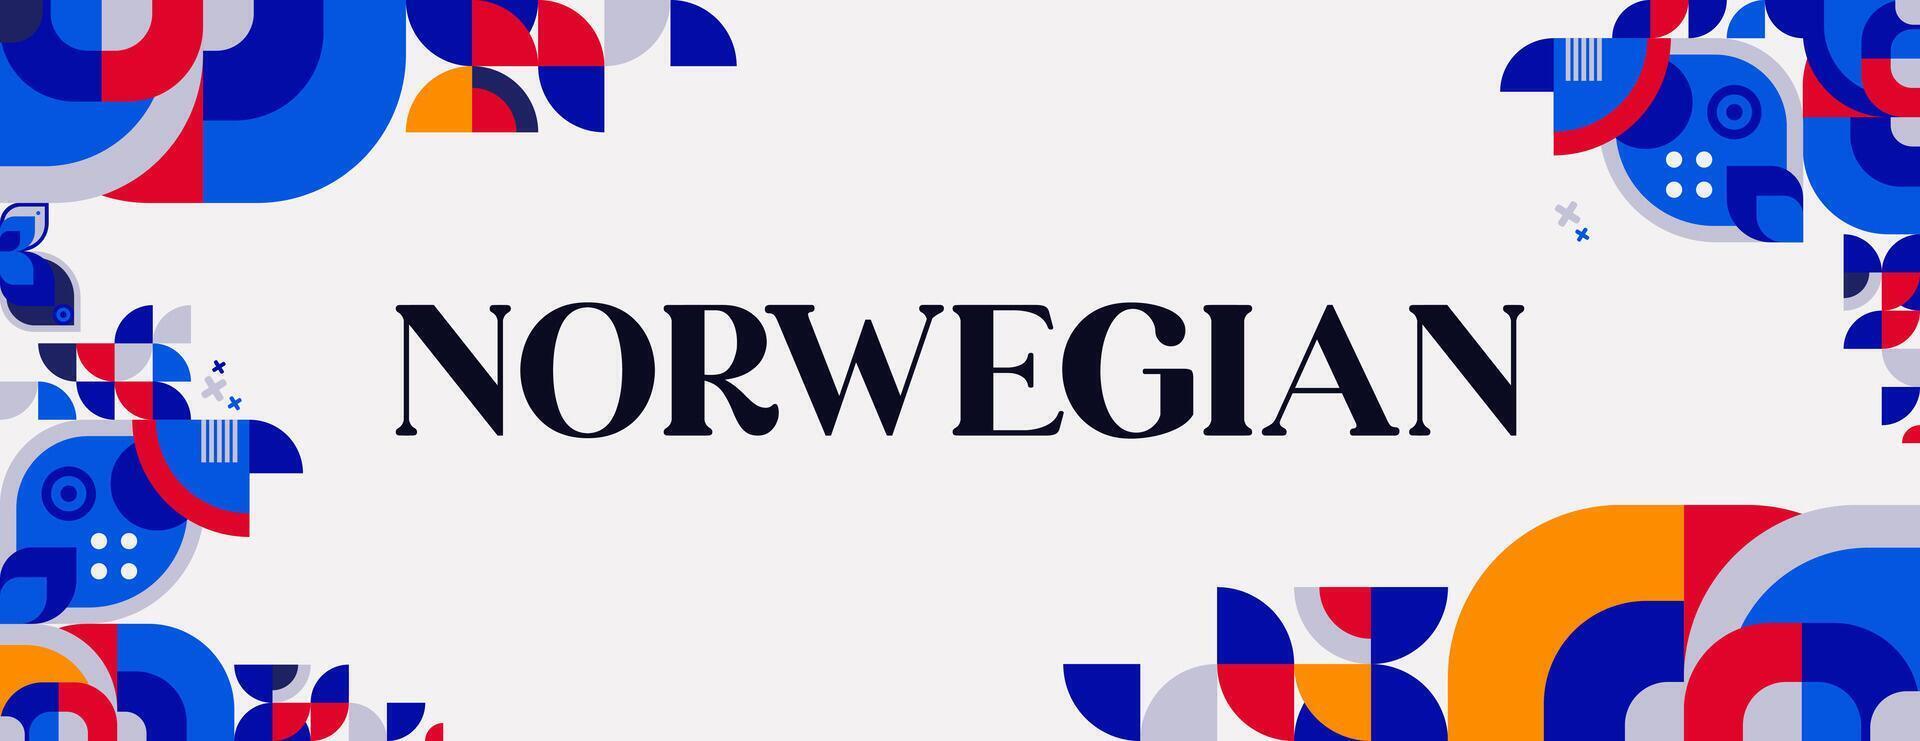 norvégien Constitution journée bannière dans coloré moderne géométrique style. content Norvège nationale indépendance journée salutation carte couverture avec typographie. vecteur illustration pour célébrer nationale vacances